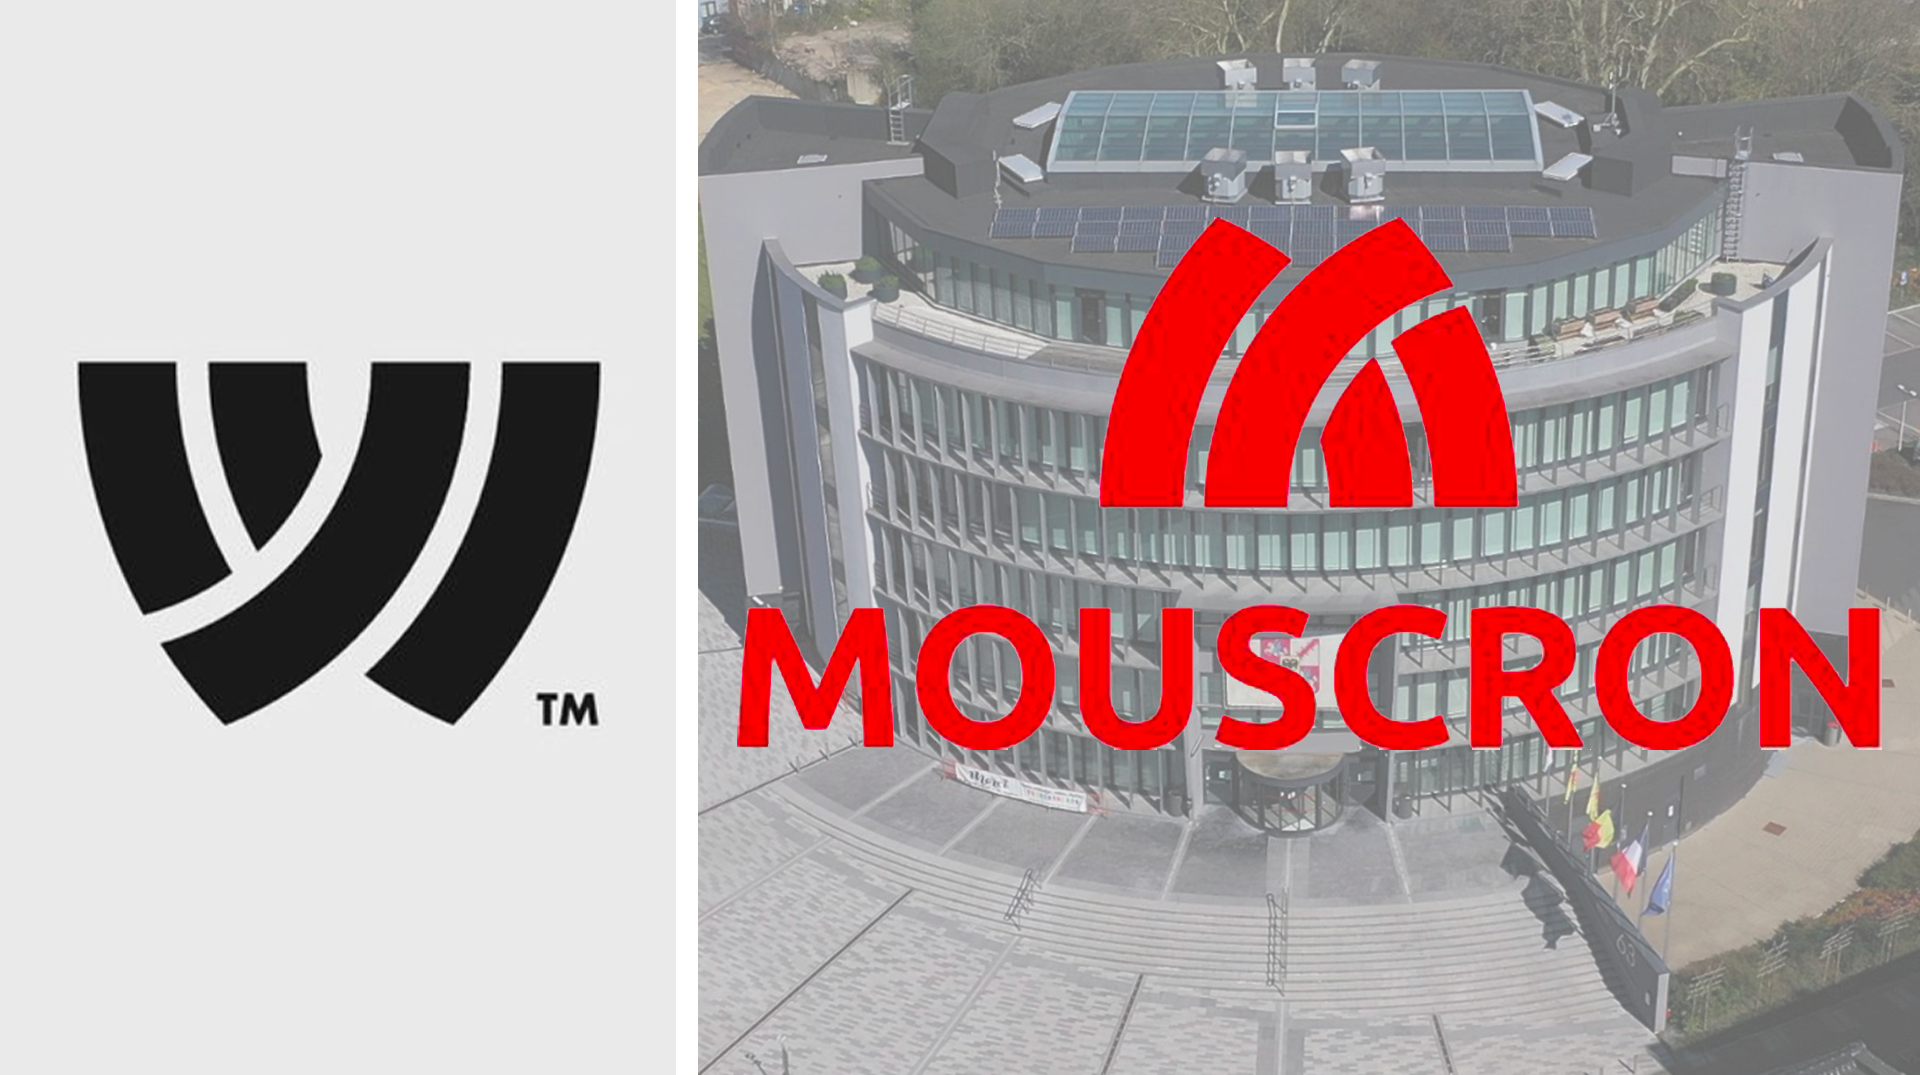 «La ville de Mouscron a volé mon travail» : le créateur du logo réagit